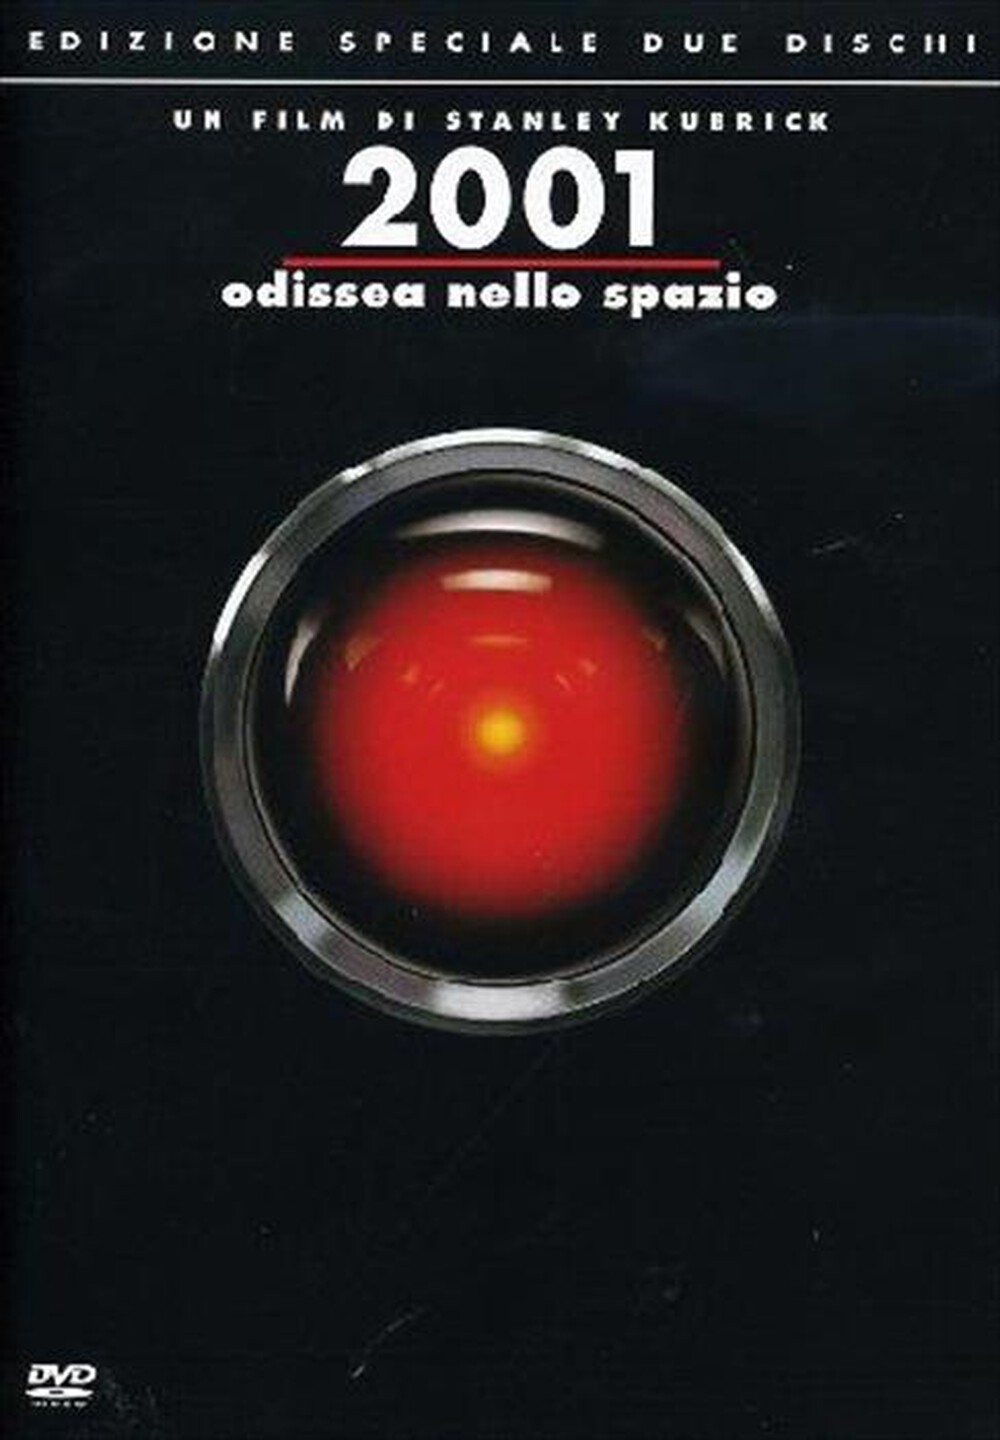 "WARNER HOME VIDEO - 2001 Odissea Nello Spazio (SE) (2 Dvd)"